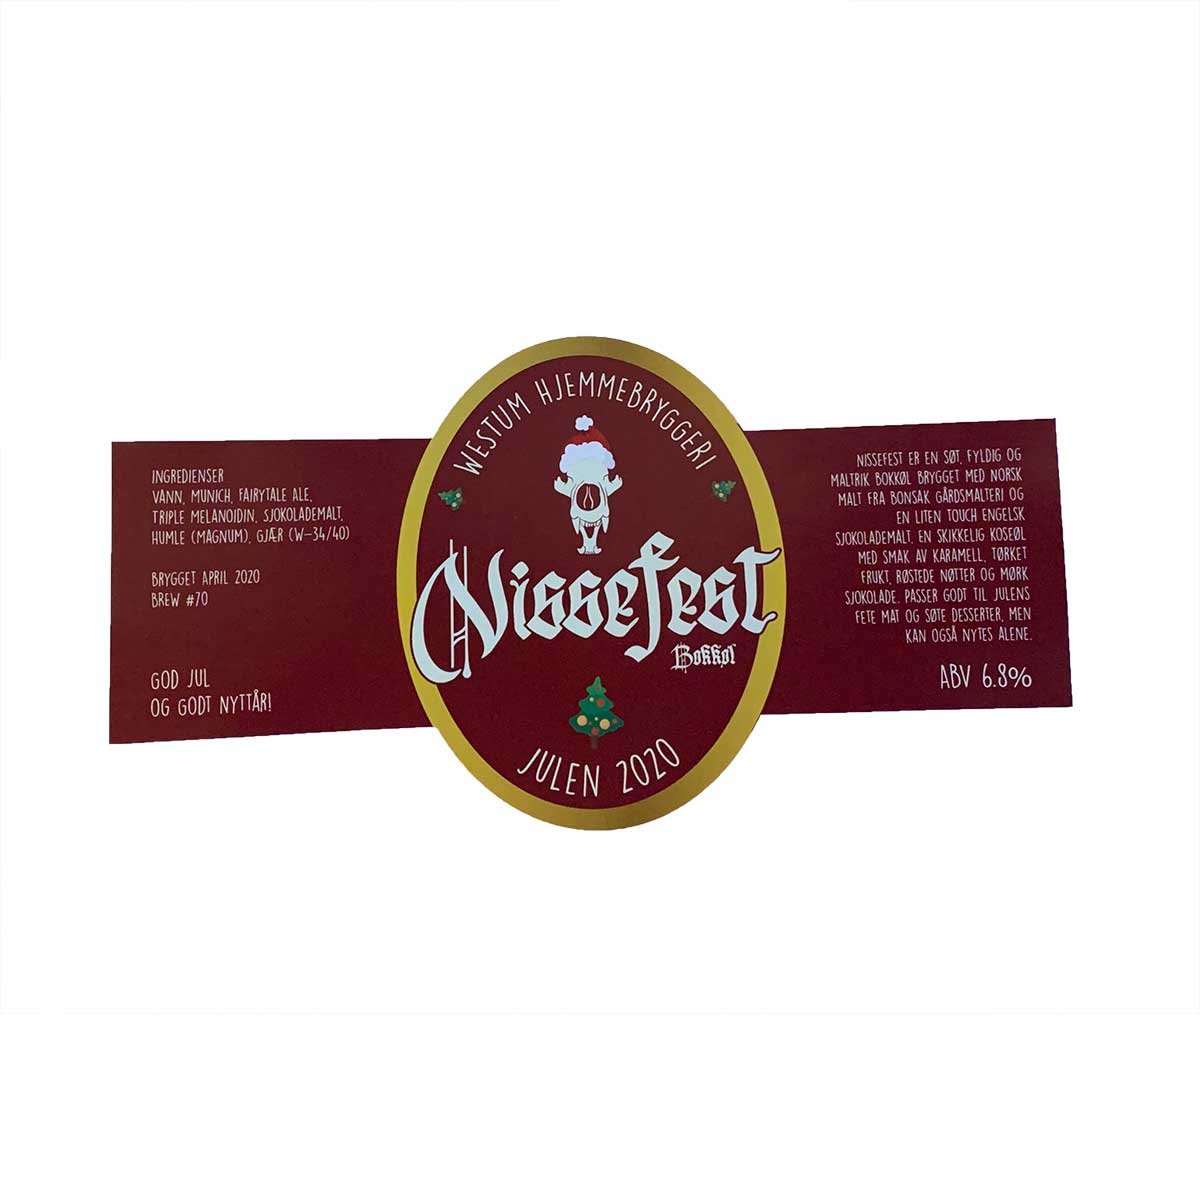 Konturskåret etikett i rødt og gull med påskriften "Nissefest"